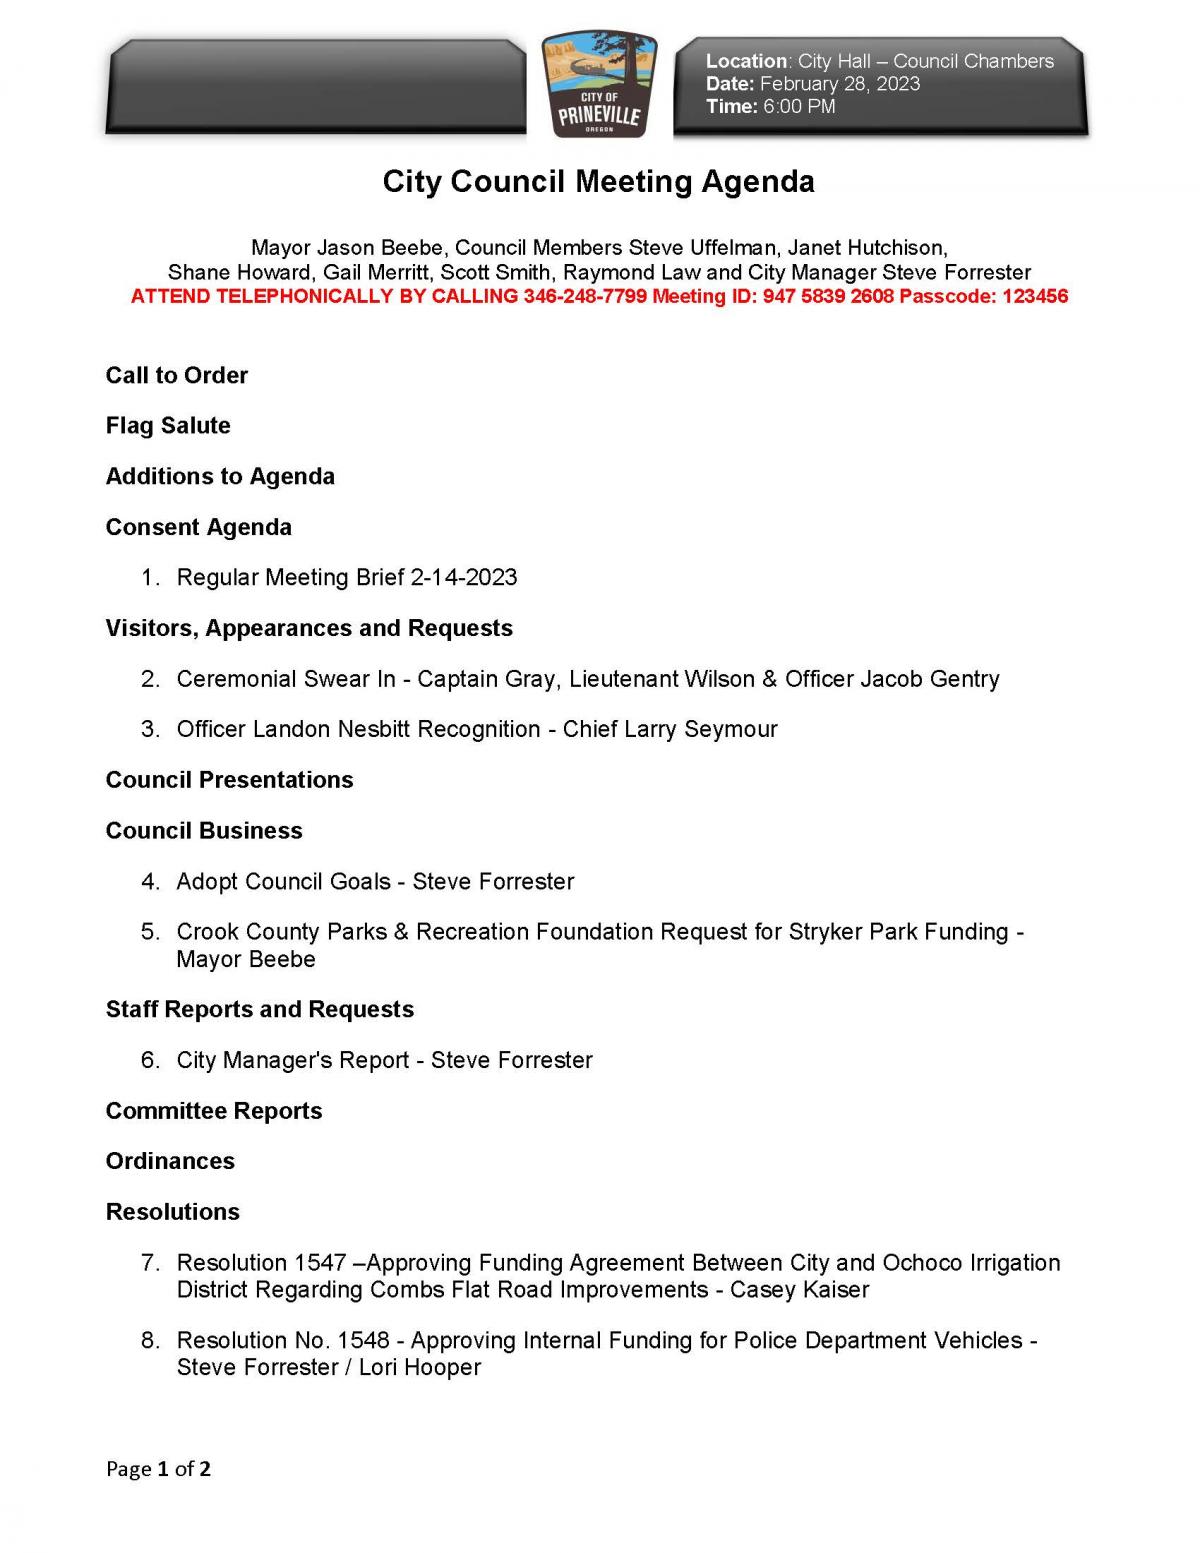 Council Agenda Page 1